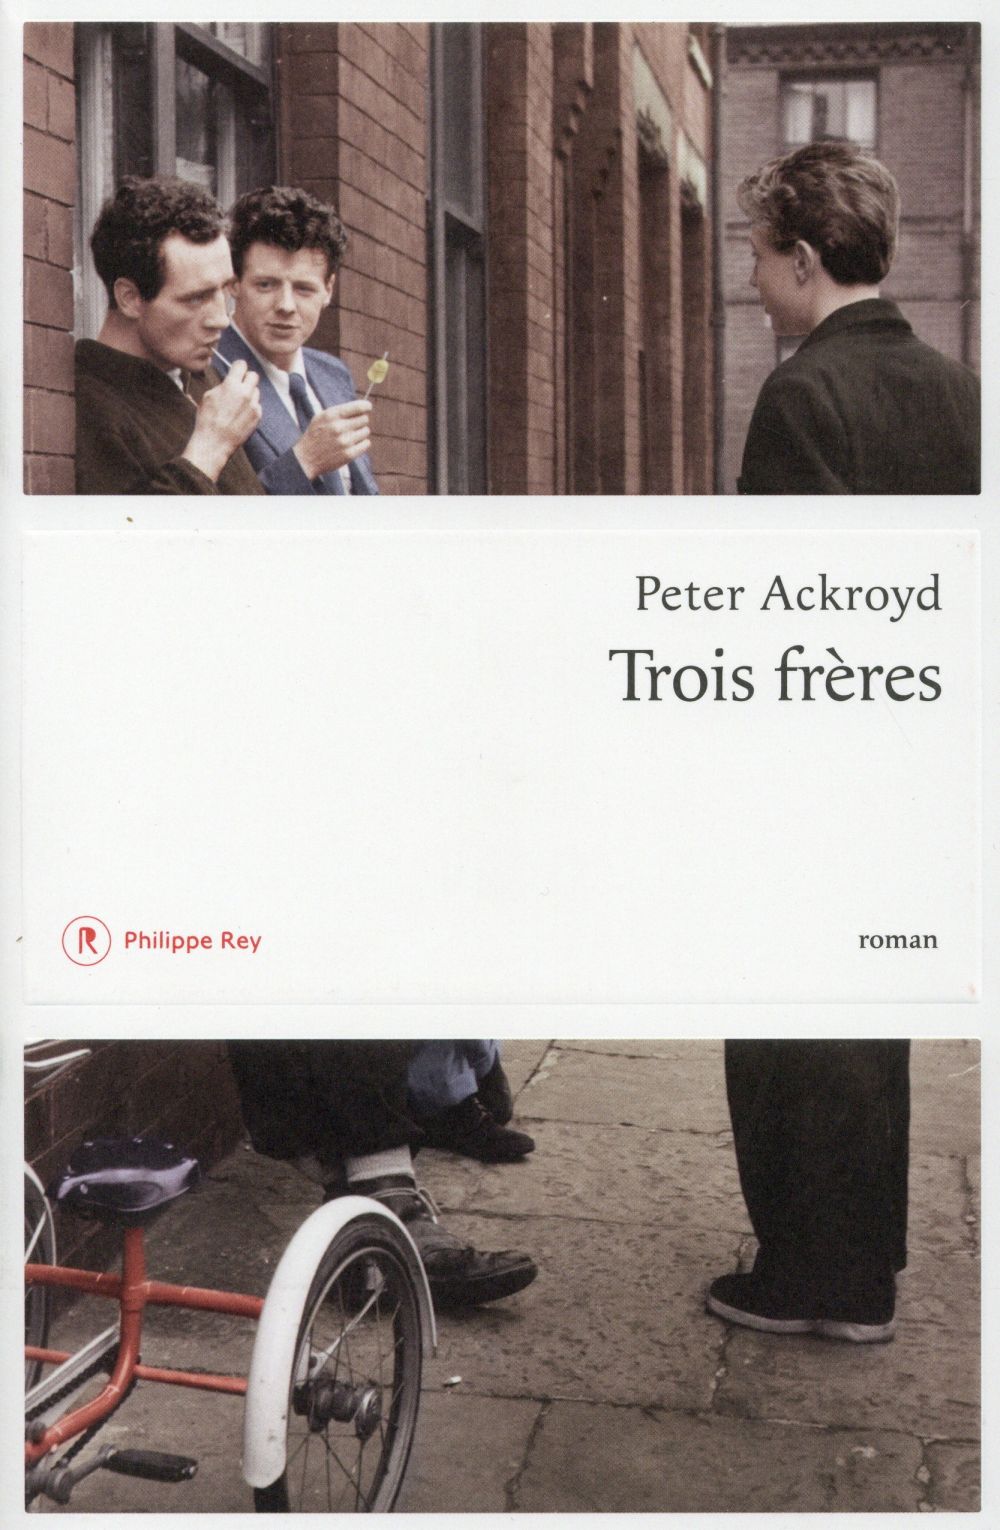 La chronique #8 du Club des Explorateurs : "Trois frères" de Peter Ackroyd